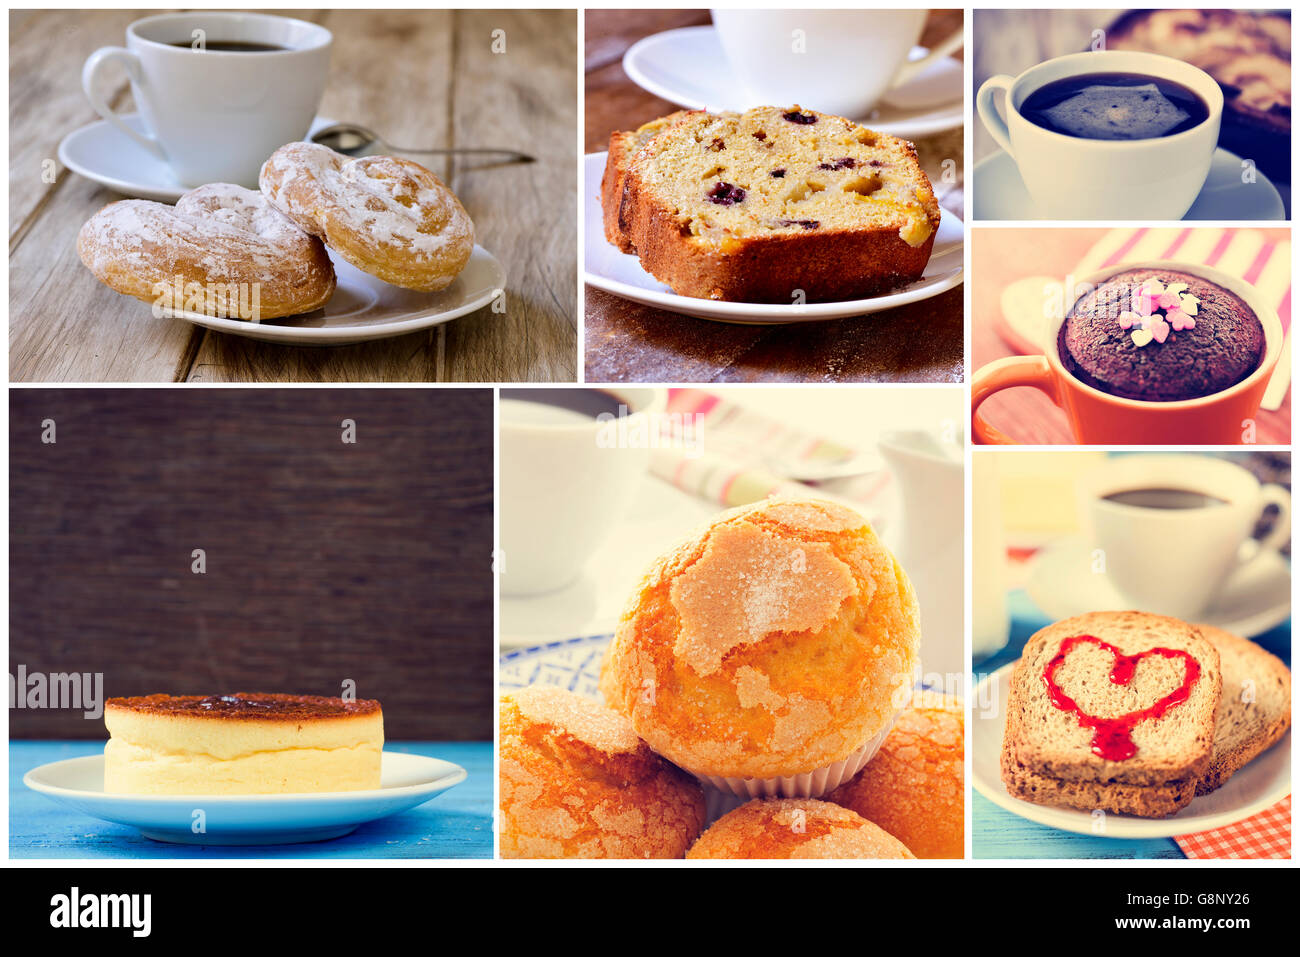 Un collage d'images différentes de définir un aliment sucré servi avec du café ou du thé, comme un un peu espagnol, un ensaimadas, un gâteau au fromage Banque D'Images